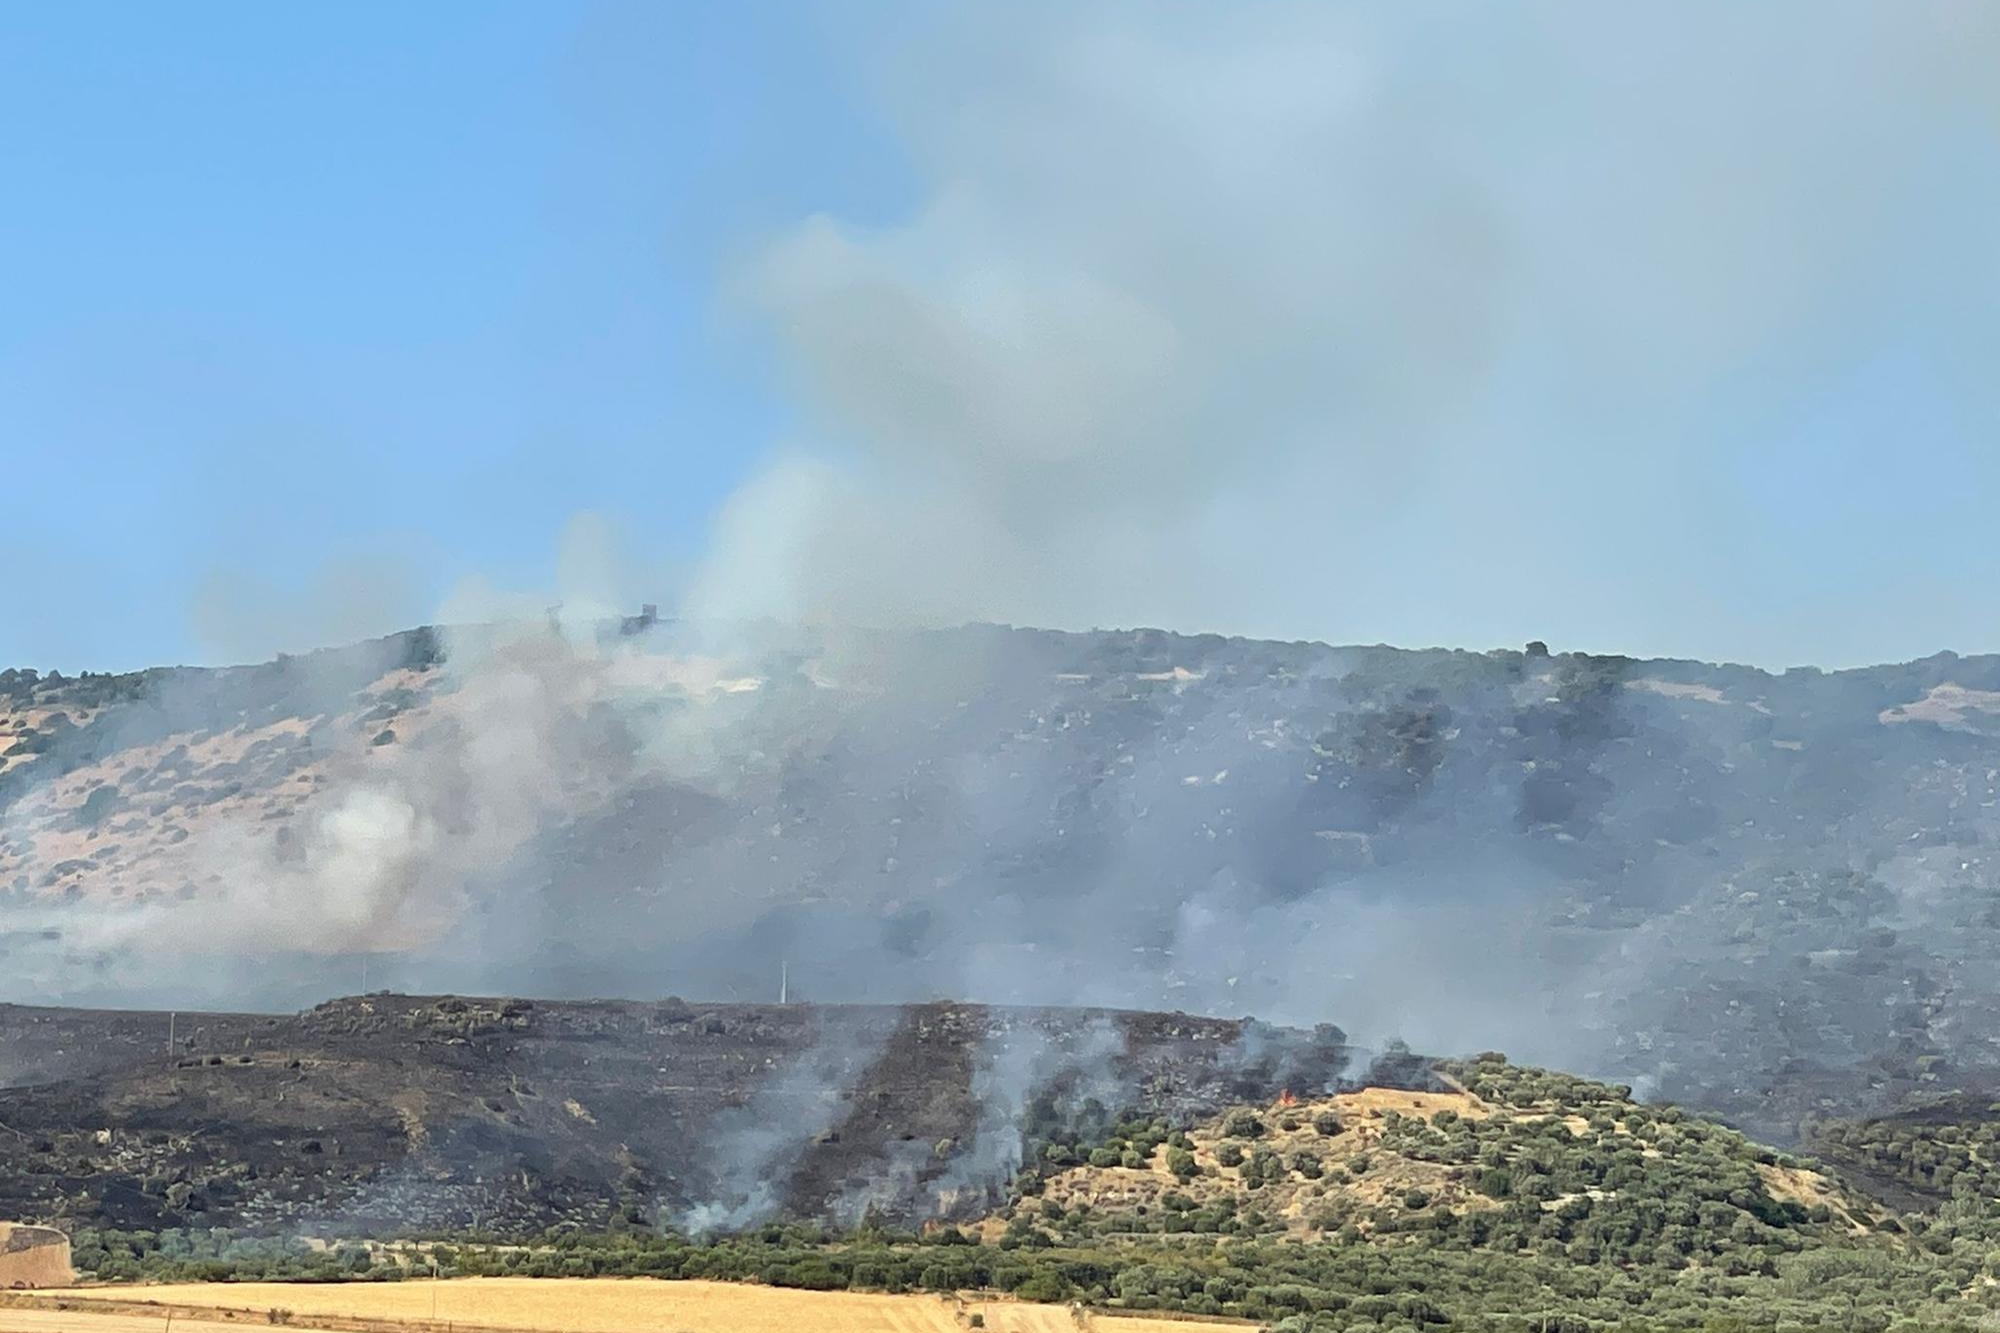 Le fiamme non danno tregua: si lotta contro il fuoco a Berchidda e Setzu, elicotteri in azione